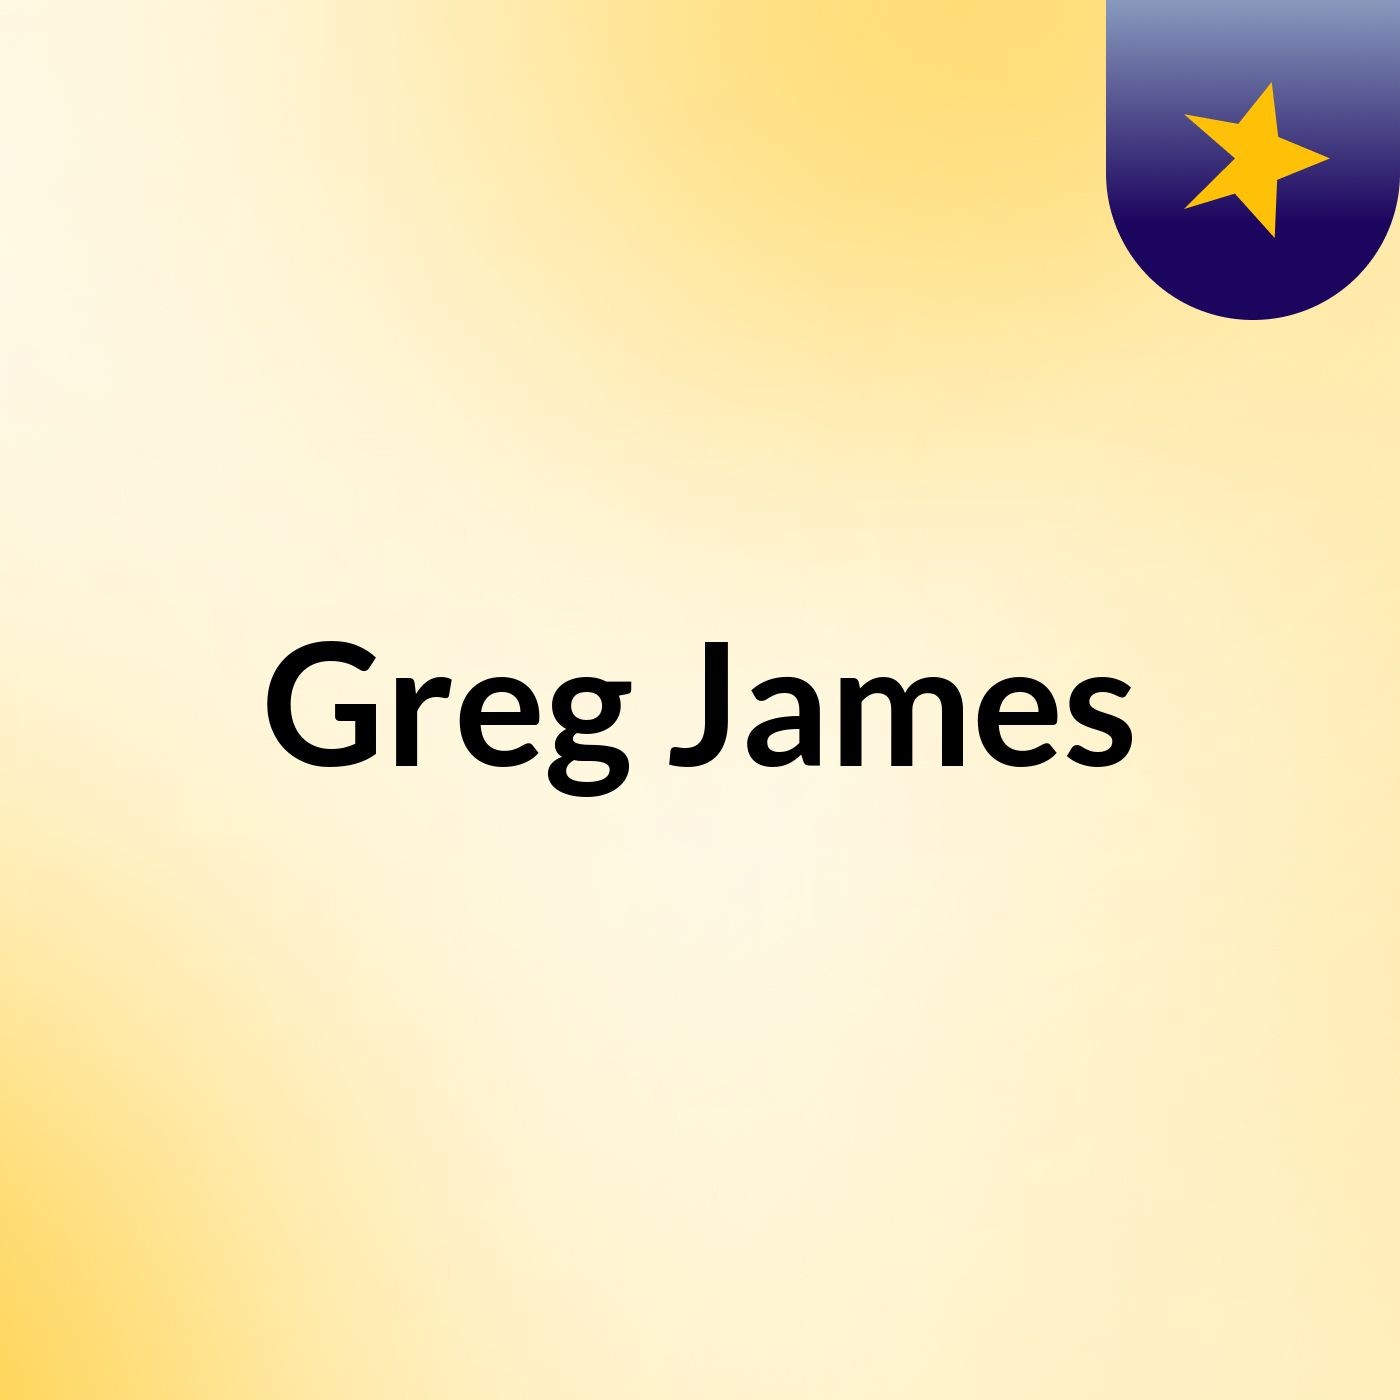 Greg James